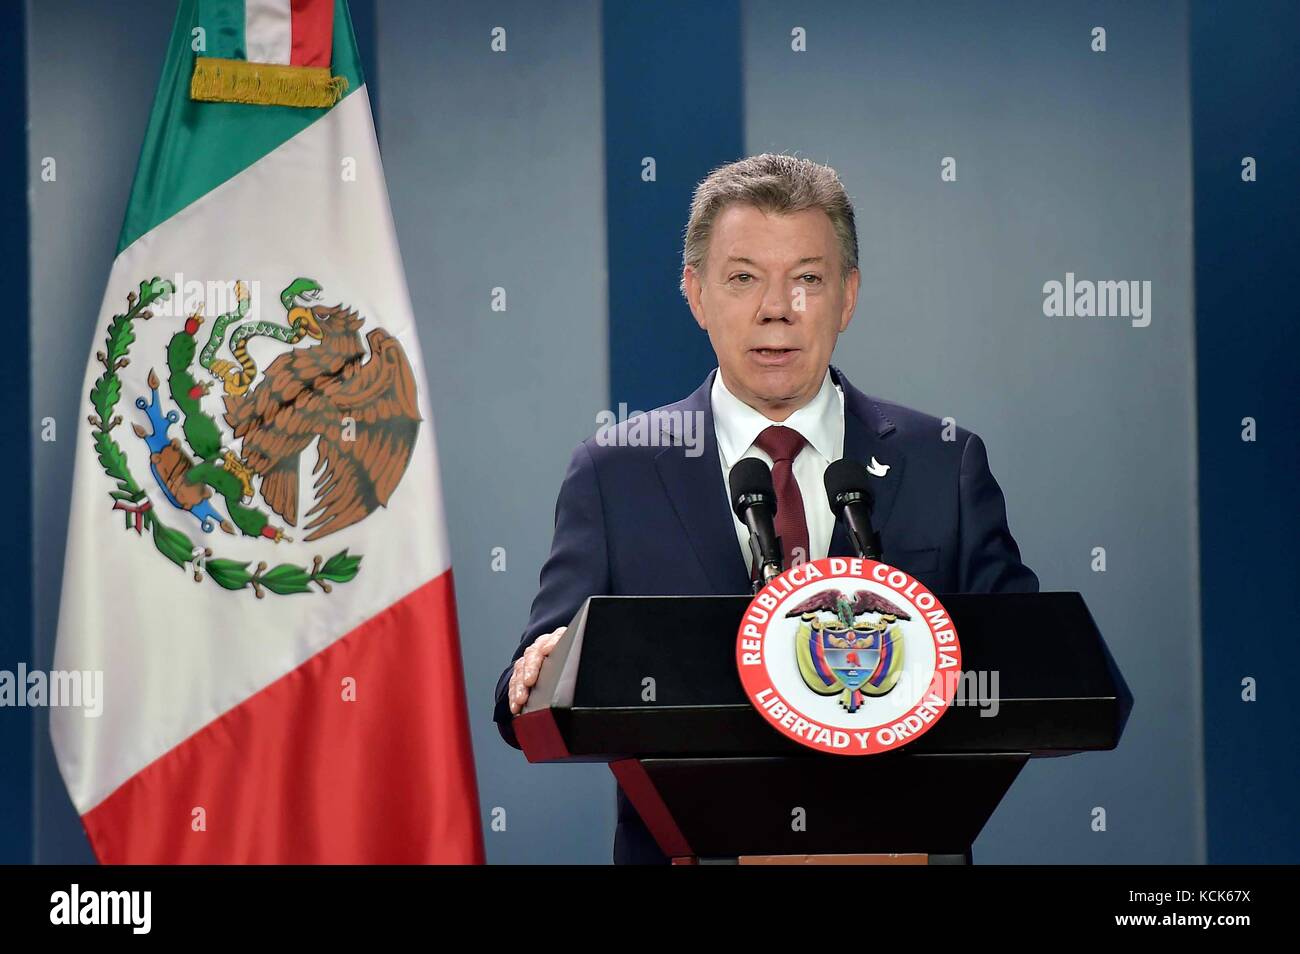 Le président colombien Juan Manuel Santos prend la parole lors d'une conférence de presse conjointe avec le président mexicain Enrique pena nieto au palais présidentiel de Nariño, 27 octobre 2016 à Bogota, Colombie. (Photo par photo via la présidence mexicaine) planetpix Banque D'Images